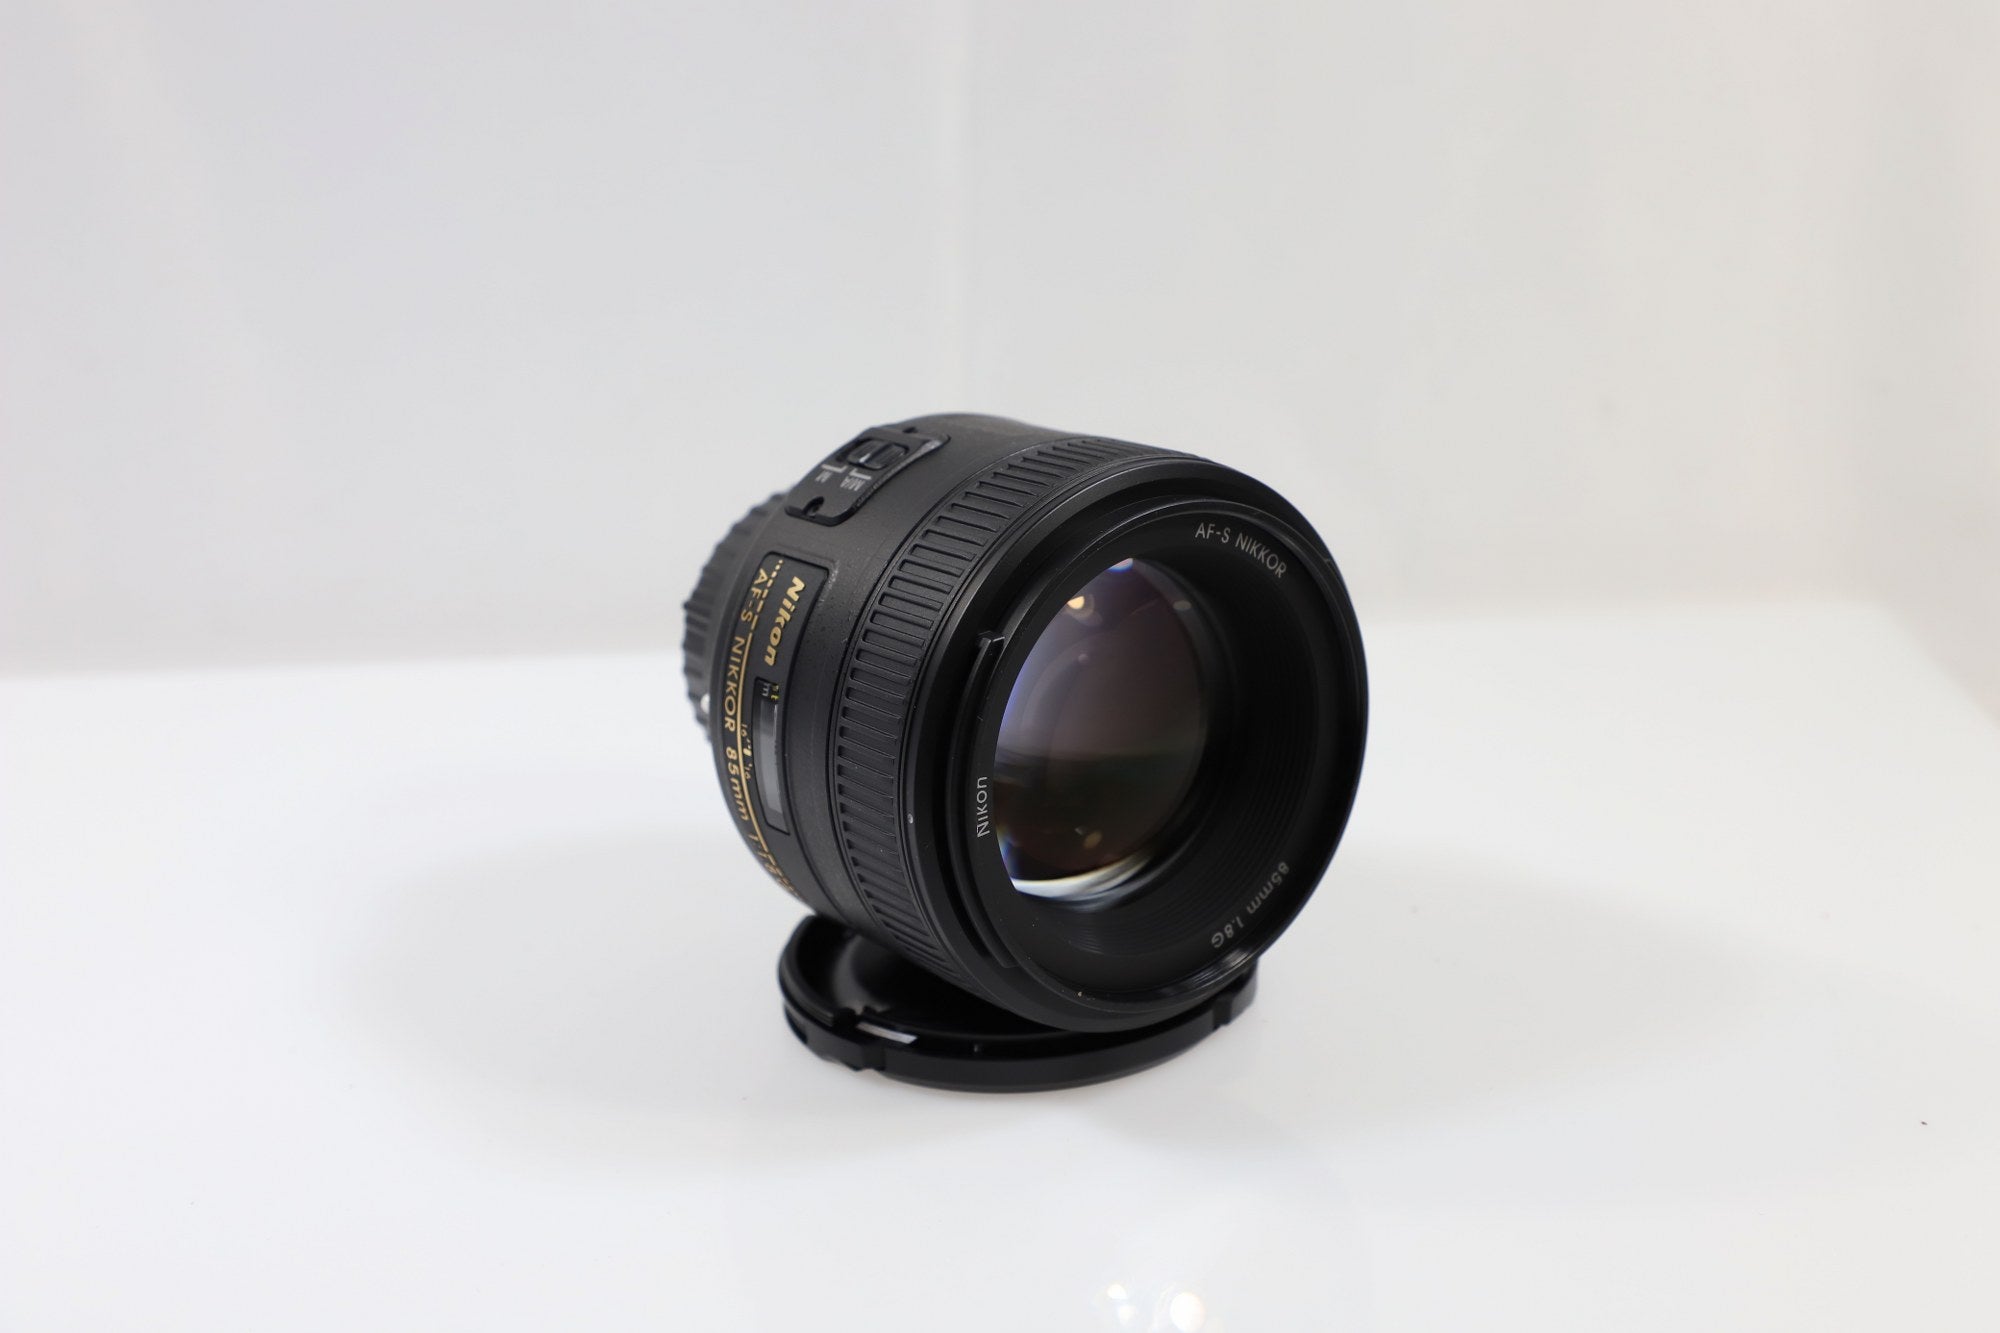 Nikon AF-S NIKKOR 85mm f/1.8G Lens - F-Mount Lens/FX Format